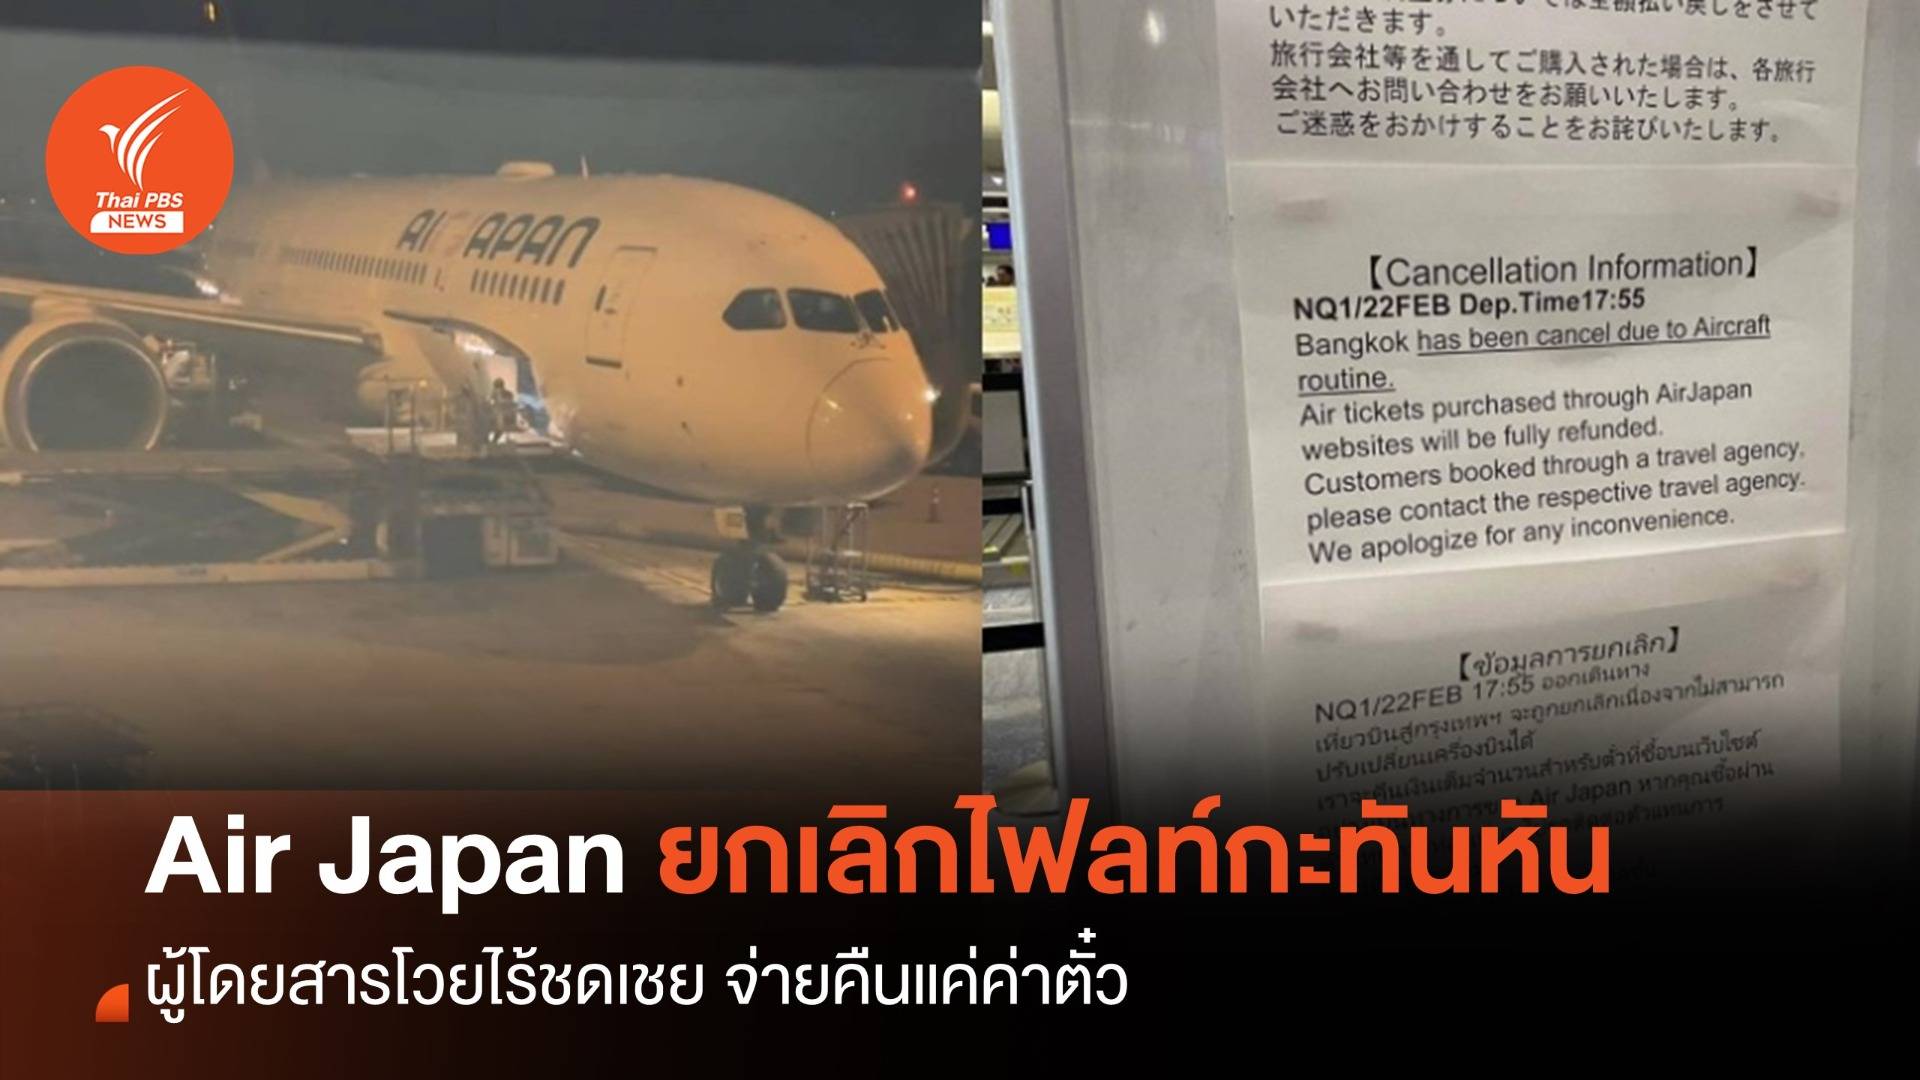 ผู้โดยสาร โวย Air Japan ยกเลิกไฟลท์กะทันหัน จ่ายคืนแค่ค่าตั๋ว